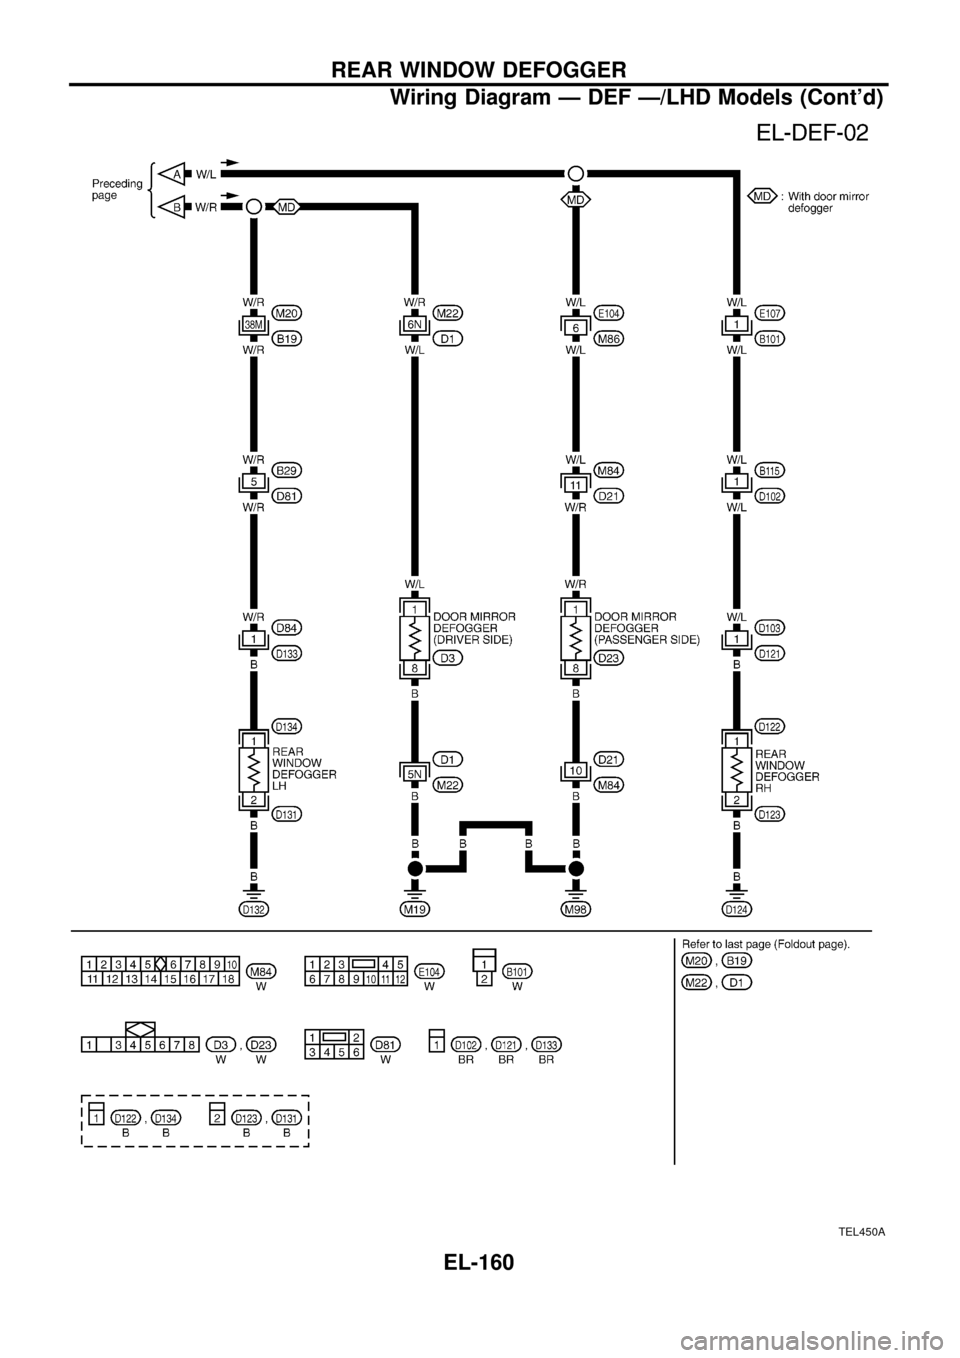 NISSAN PATROL 1998 Y61 / 5.G Electrical System Workshop Manual TEL450A
REAR WINDOW DEFOGGER
Wiring Diagram Ð DEF Ð/LHD Models (Contd)
EL-160 